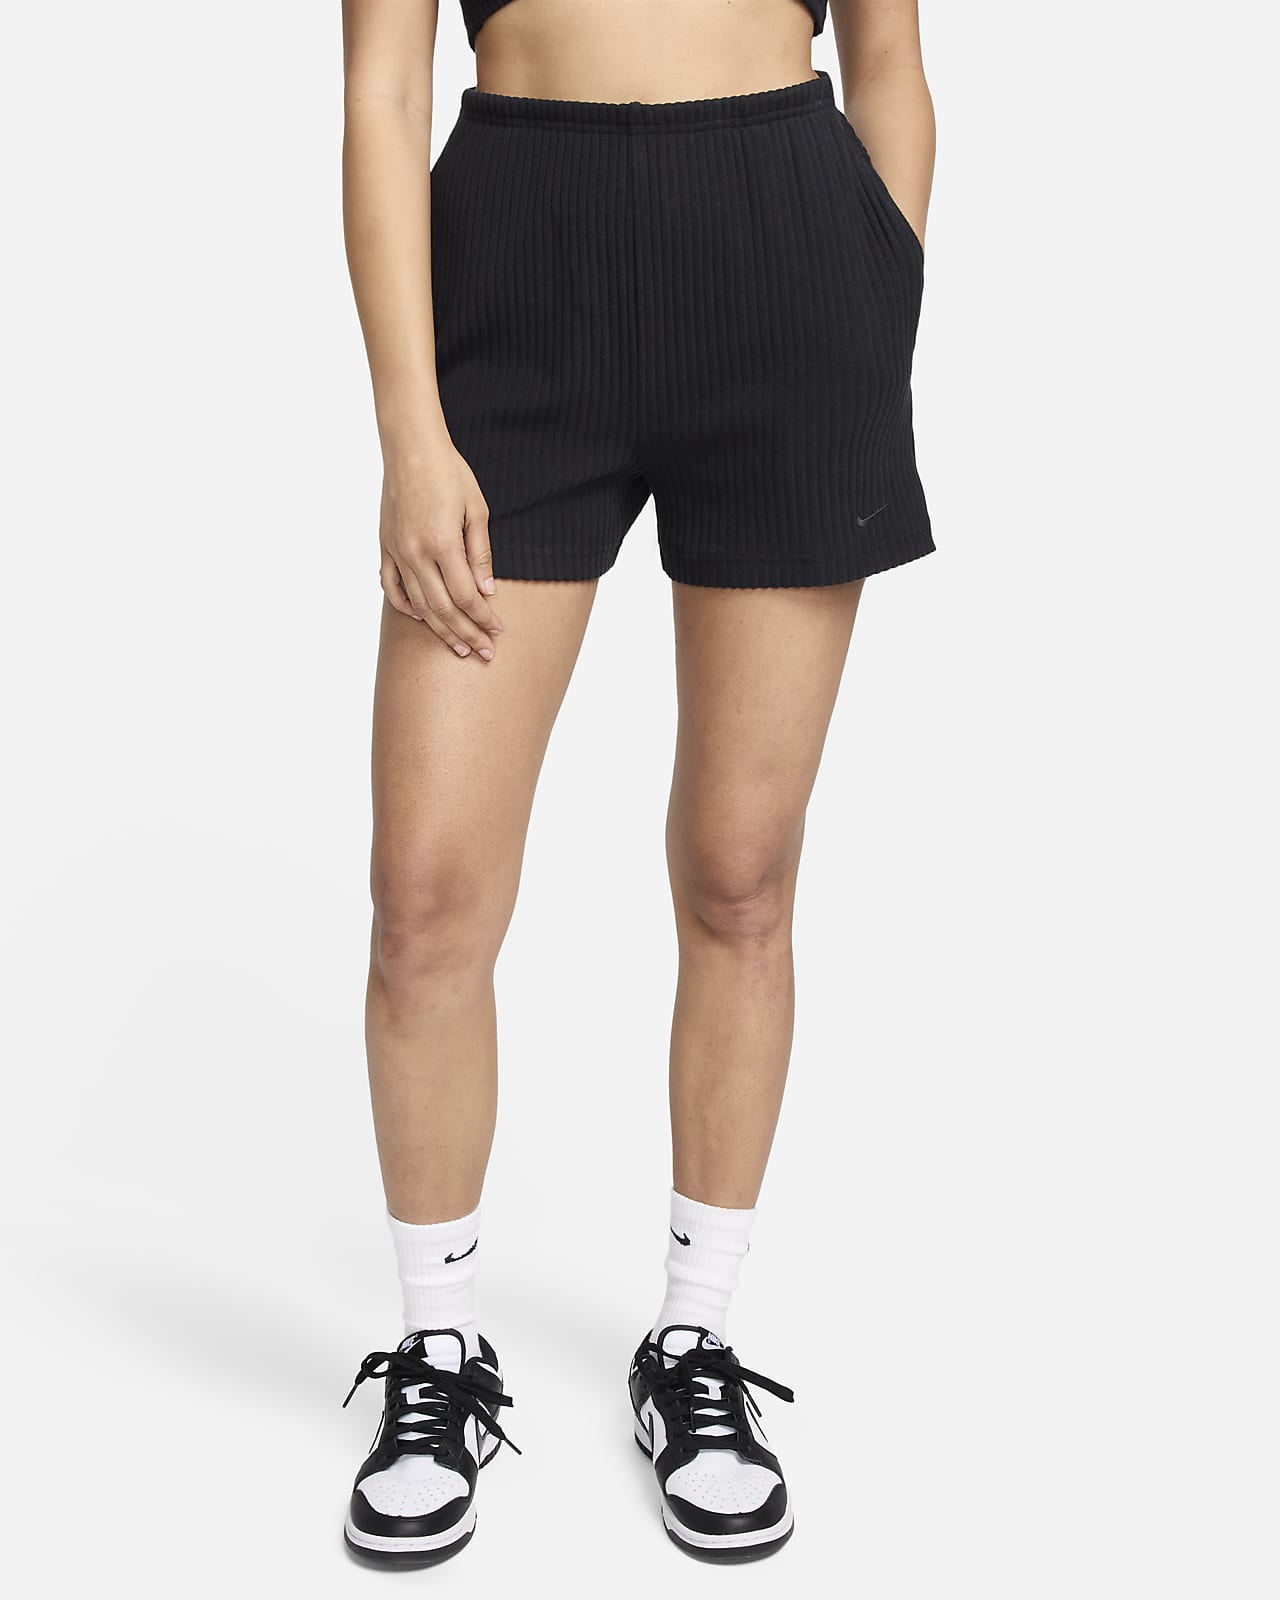 Nike Sportswear Chill Knit magas derekú, karcsúsított szabású, 8 cm-es, bordázott női rövidnadrág